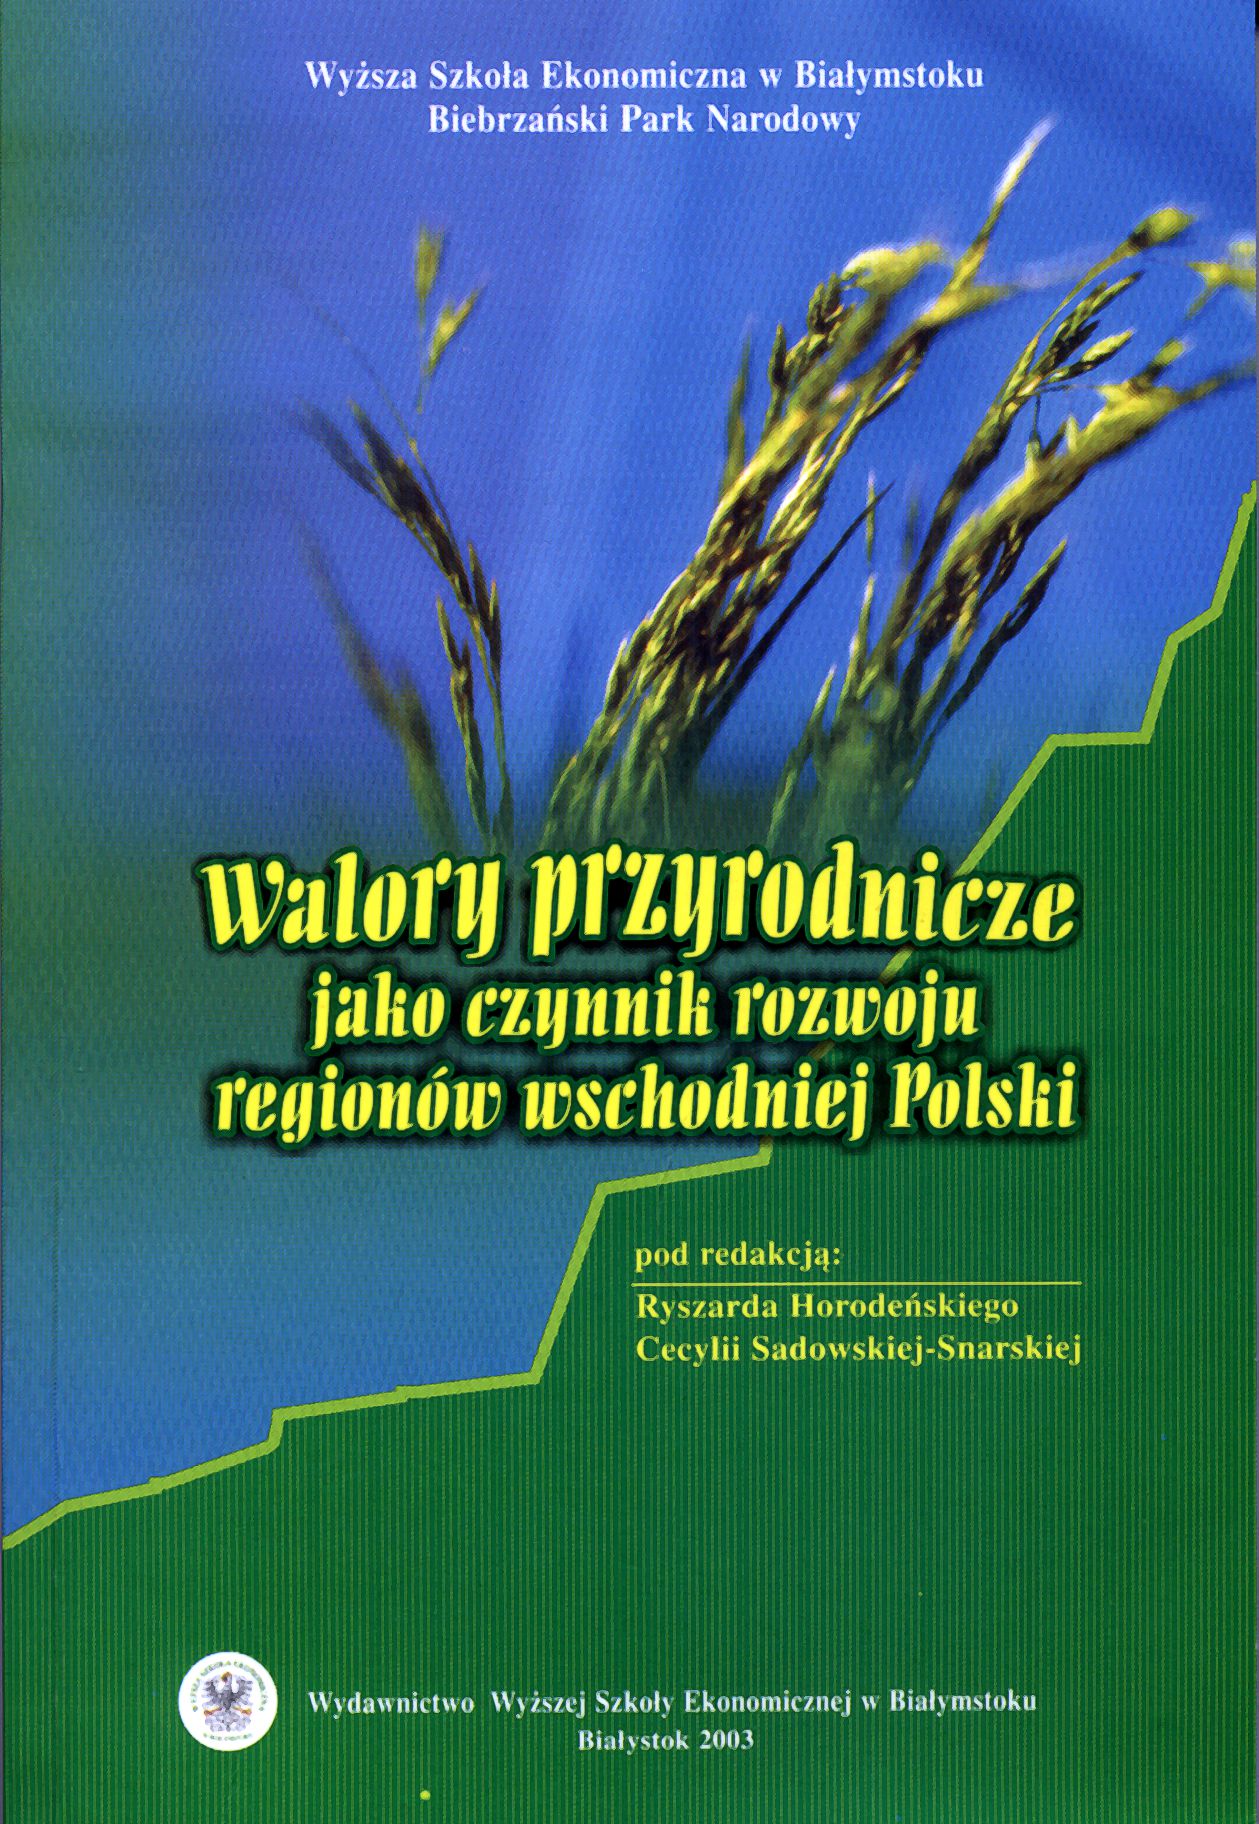 Walory przyrodnicze jako czynniki rozwoju regionów wschodniej Polski.